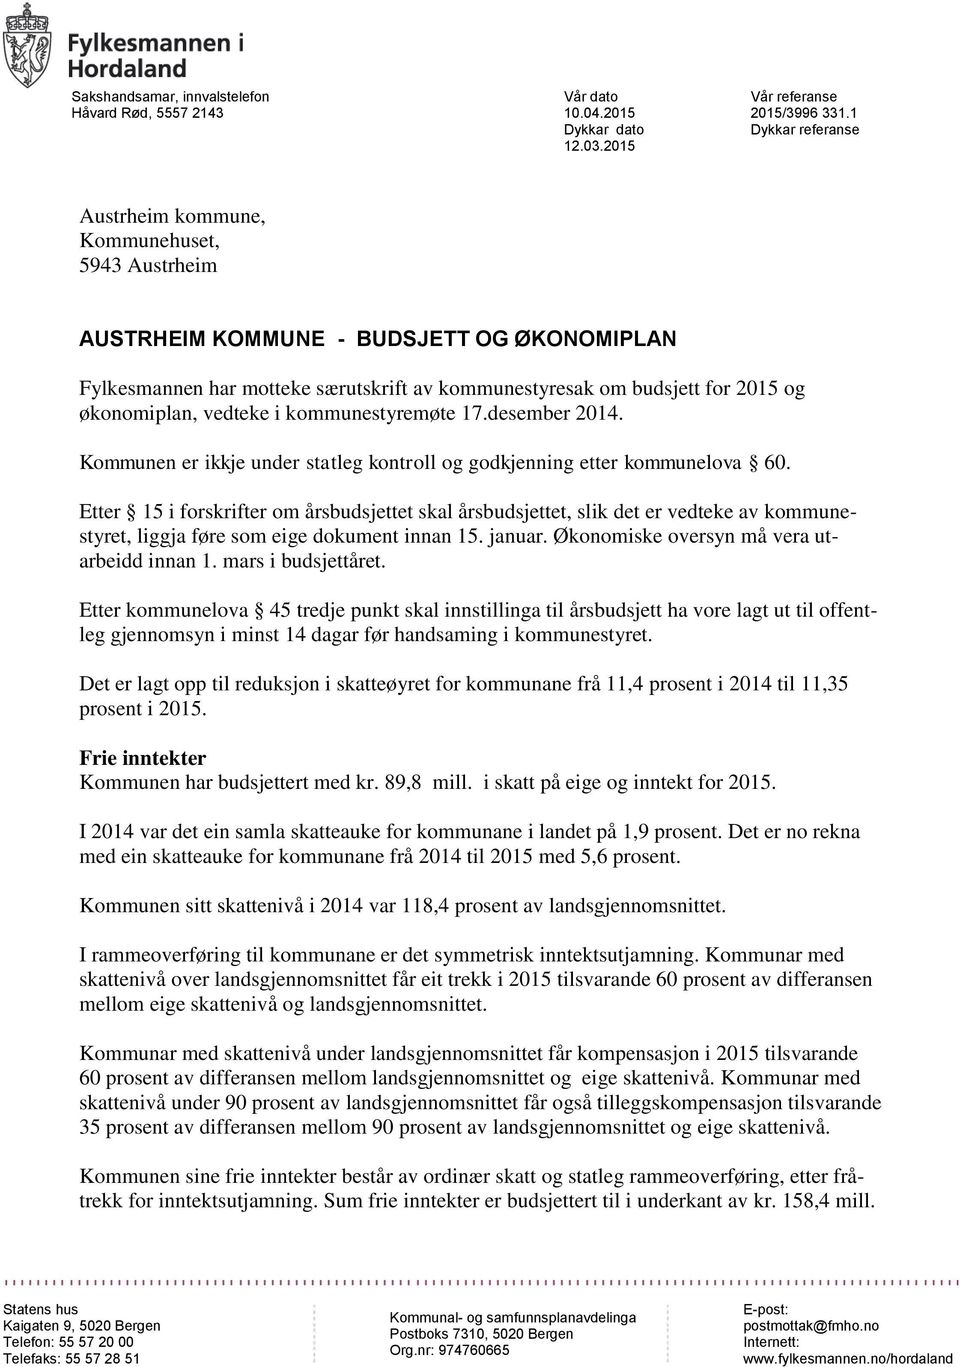 økonomiplan, vedteke i kommunestyremøte 17.desember 2014. Kommunen er ikkje under statleg kontroll og godkjenning etter kommunelova 60.